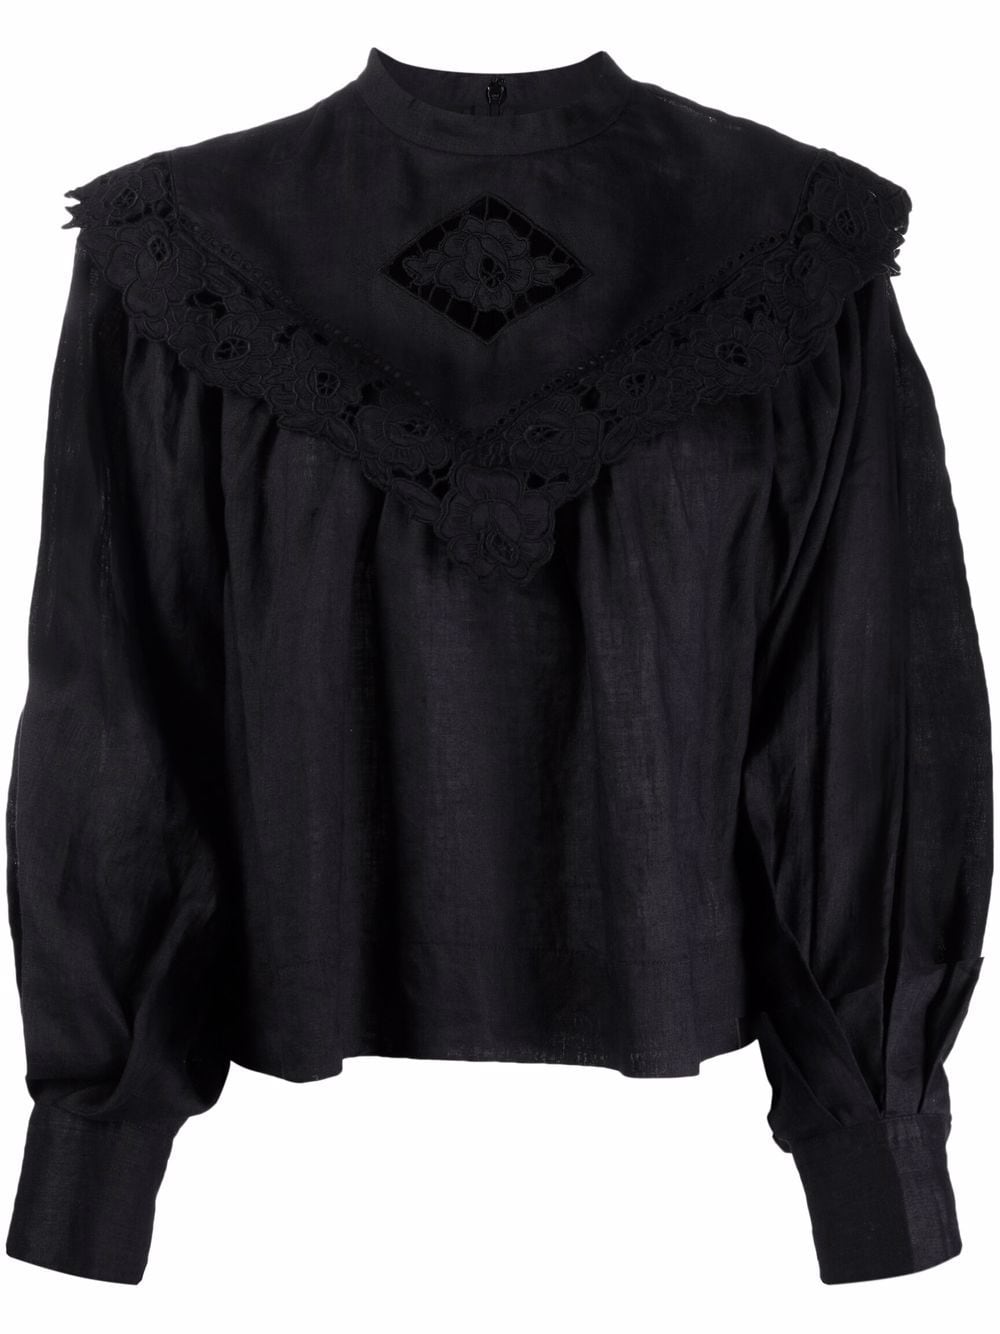 MARANT ÉTOILE cut-out ruffle-trim blouse - Black von MARANT ÉTOILE